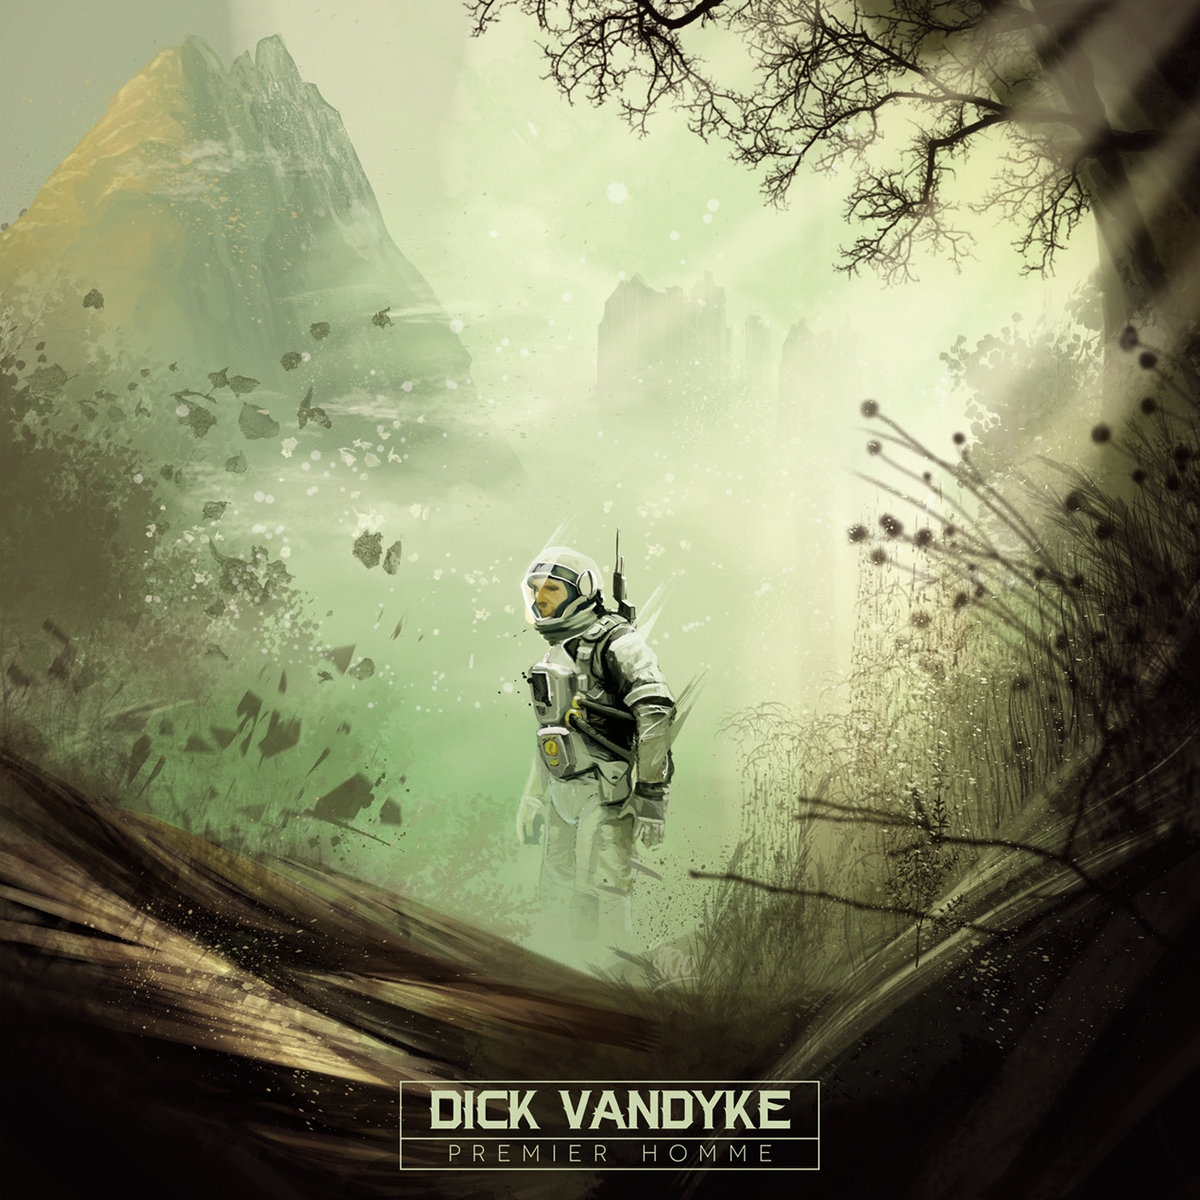 Album Cassette "Dick Vandyke - Premier homme" de dick vandyke sur Scredboutique.com